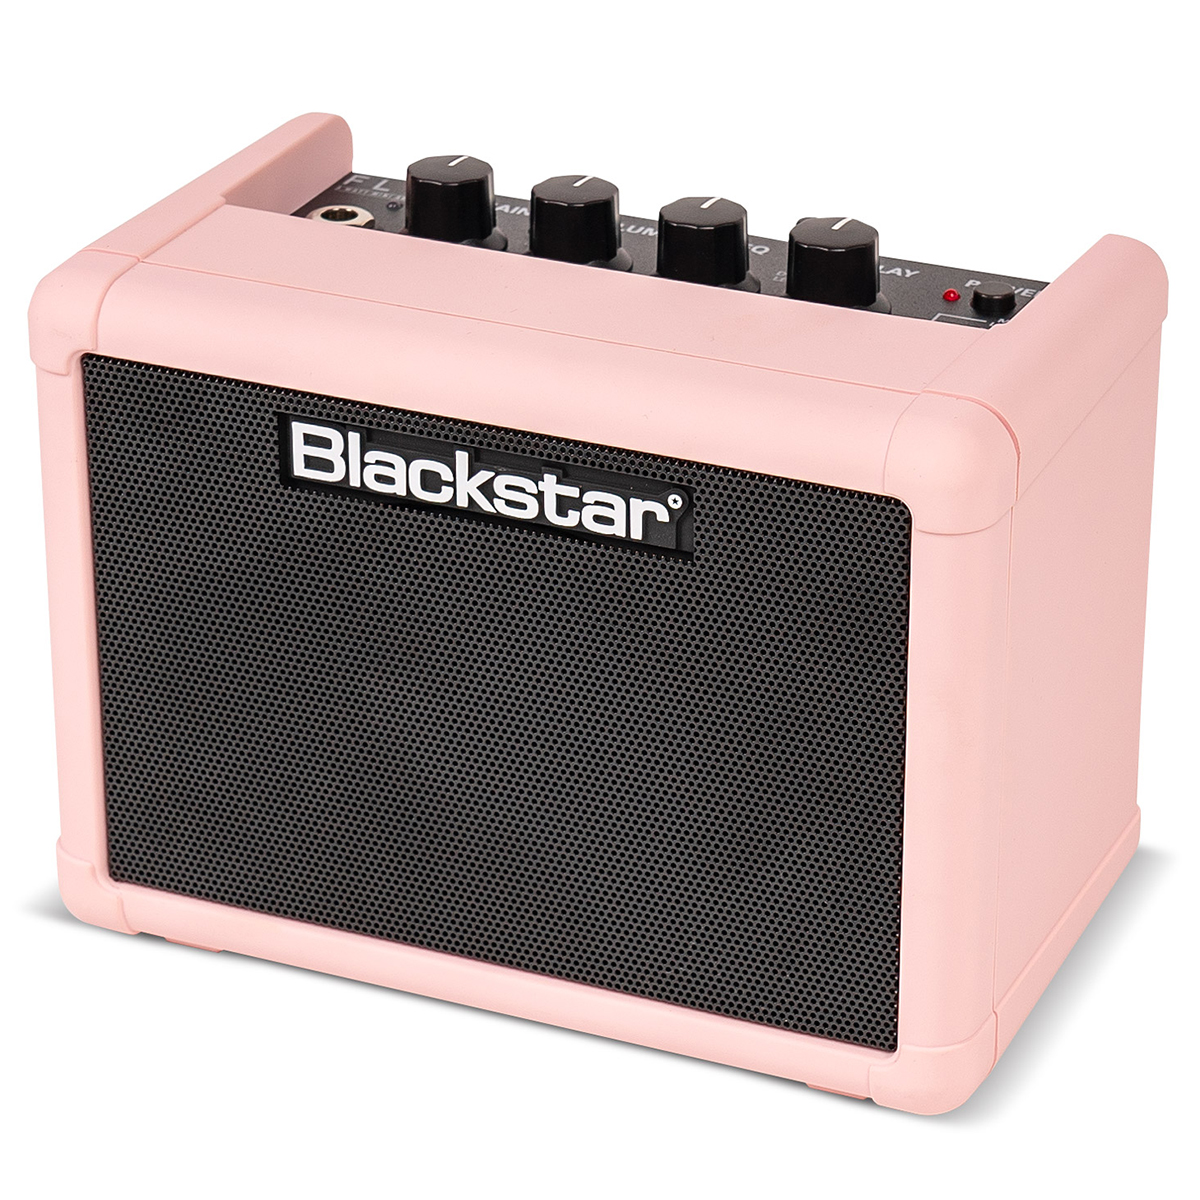 Blackstar ブラックスター FLY3 コンパクト 3Wギターアンプ